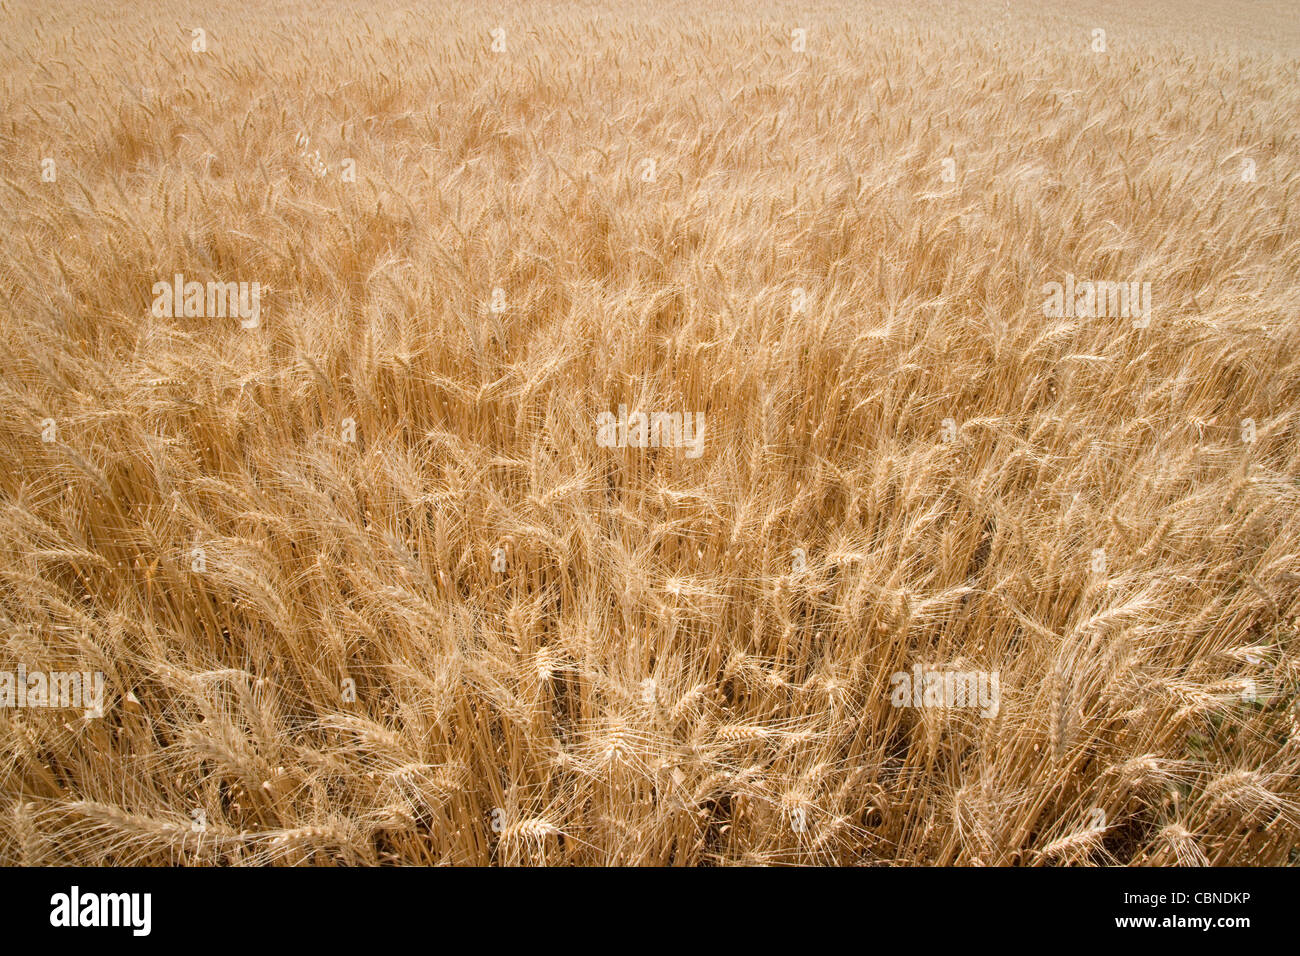 USA; Washington; Palouse Hills; Wheat Field Stock Photo